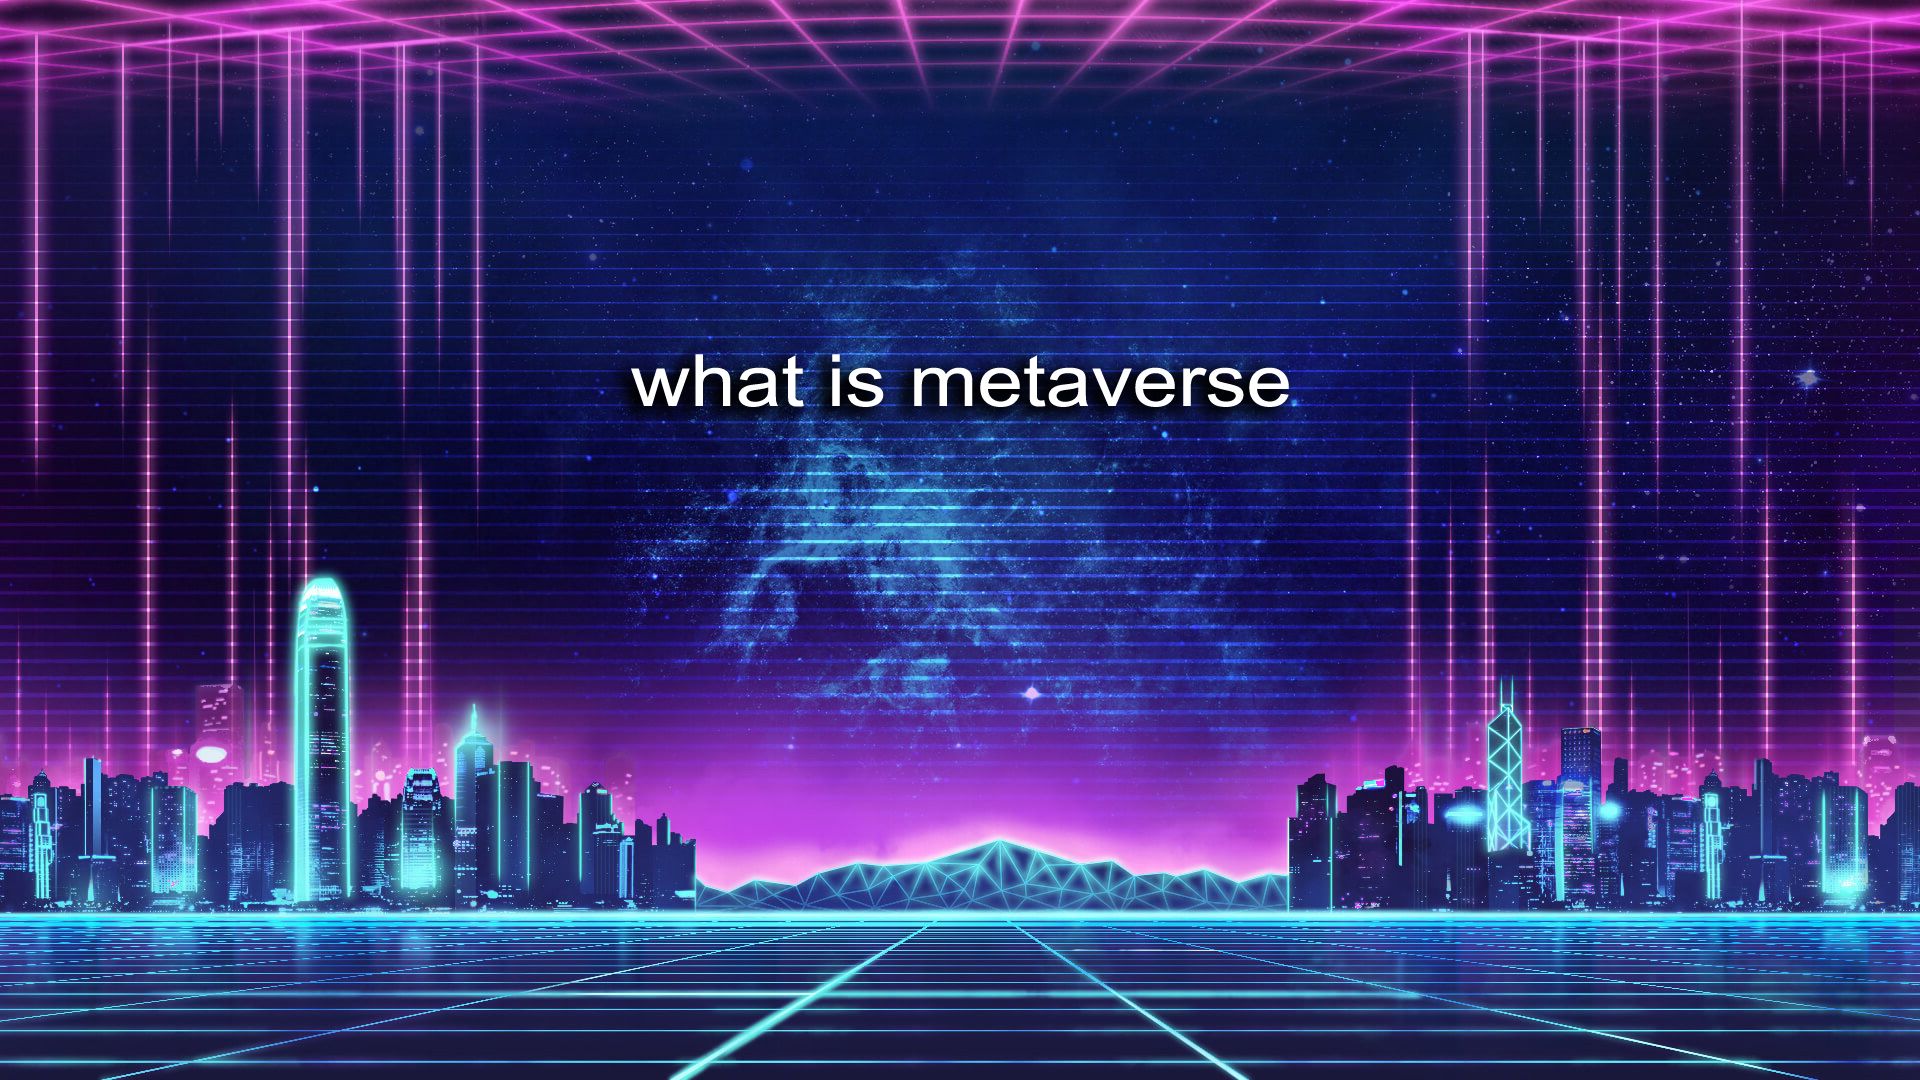 这张图片展示了充满赛博朋克风格的虚拟城市景观，紫色调，前方有“what is metaverse”字样，彰显科技感和未来主义。